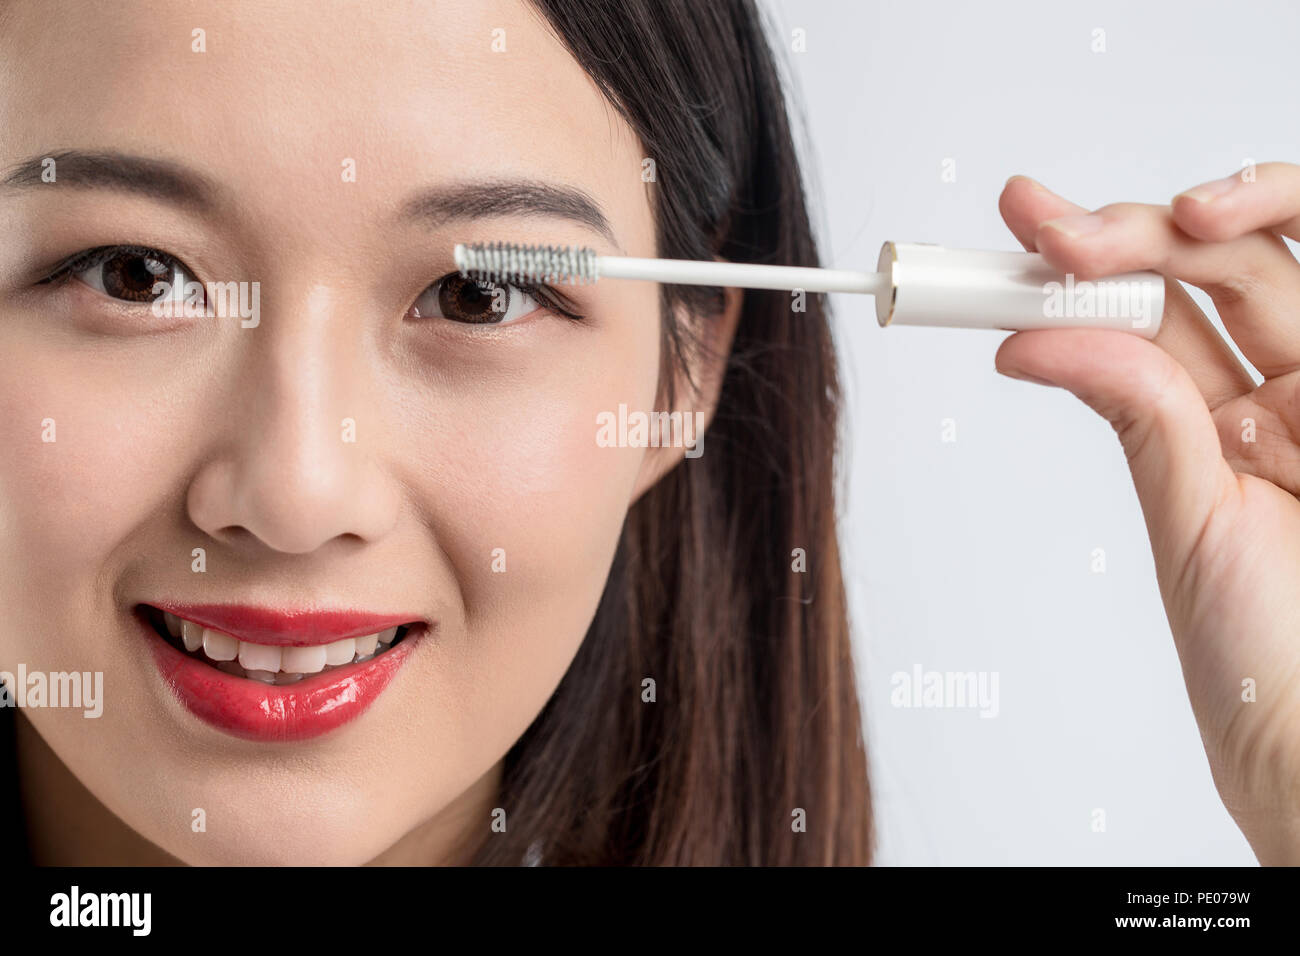 Chinese woman putting mascara on eyelashes on gray background Stock Photo -  Alamy